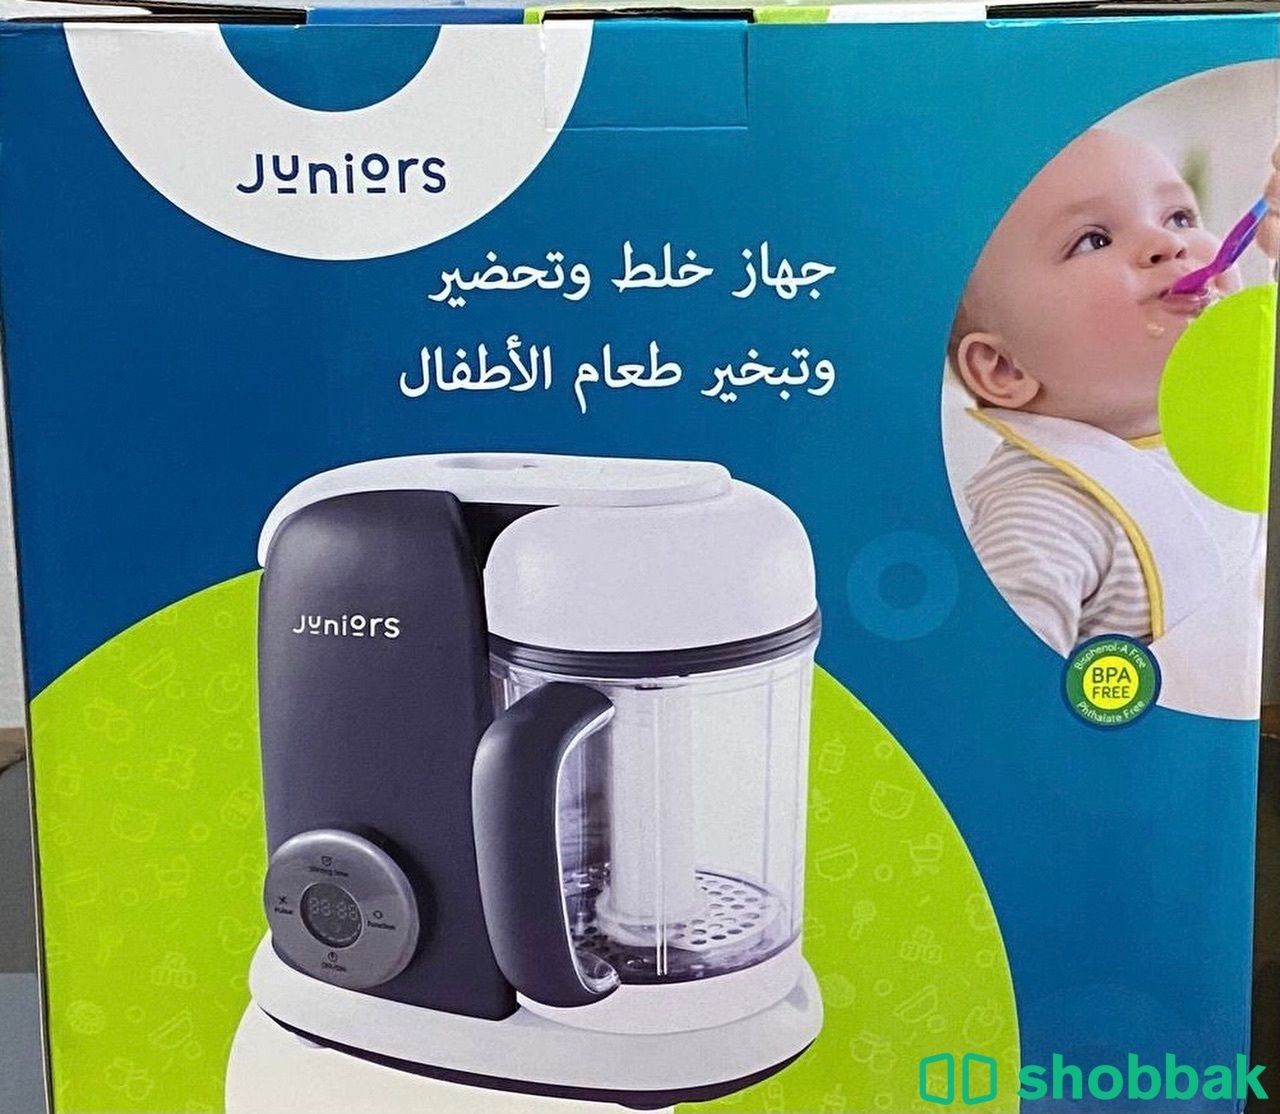 جهاز تحضير وخلط الطعام بالبخار الأطفال Shobbak Saudi Arabia